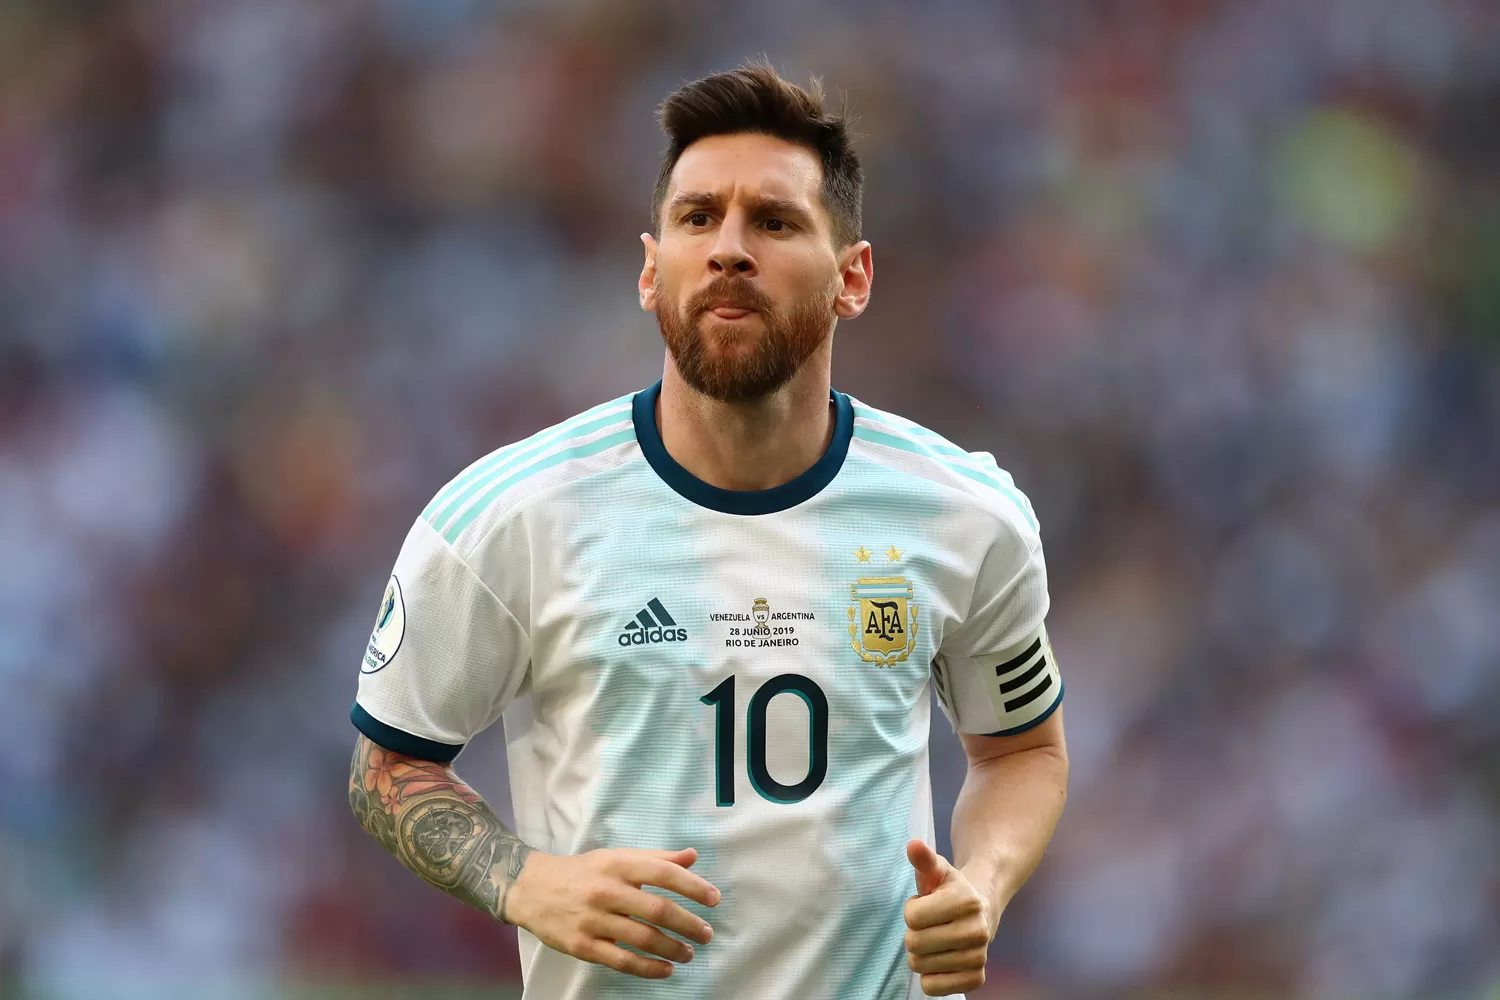 No cambiaría nada de lo que tuve en mi carrera por ser campeón del mundo, confesó Messi